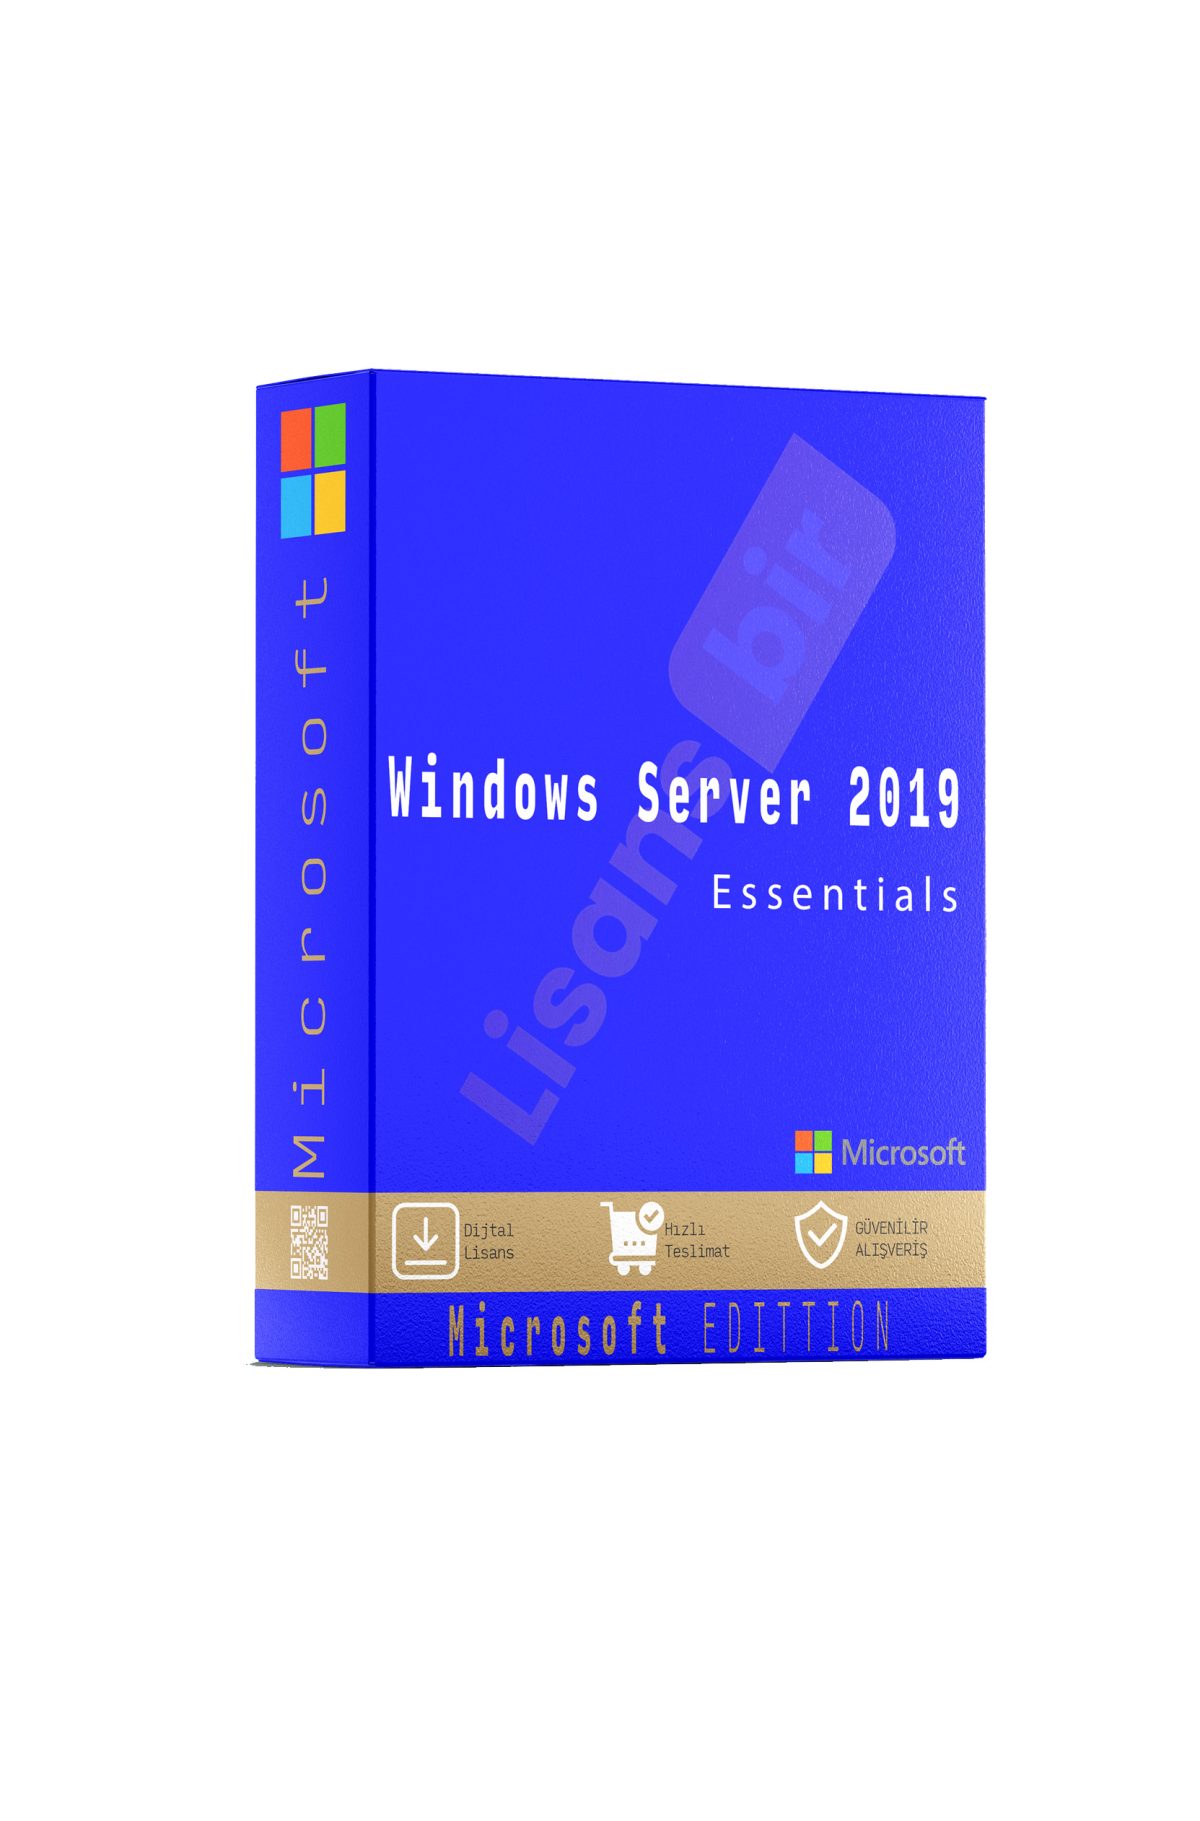 Windows Server 2019 Essentials özellikleri ve çekici yönleri hakkında daha fazla bilgi için Lisansbir ürün sayfasını ziyaret edebilirsiniz.